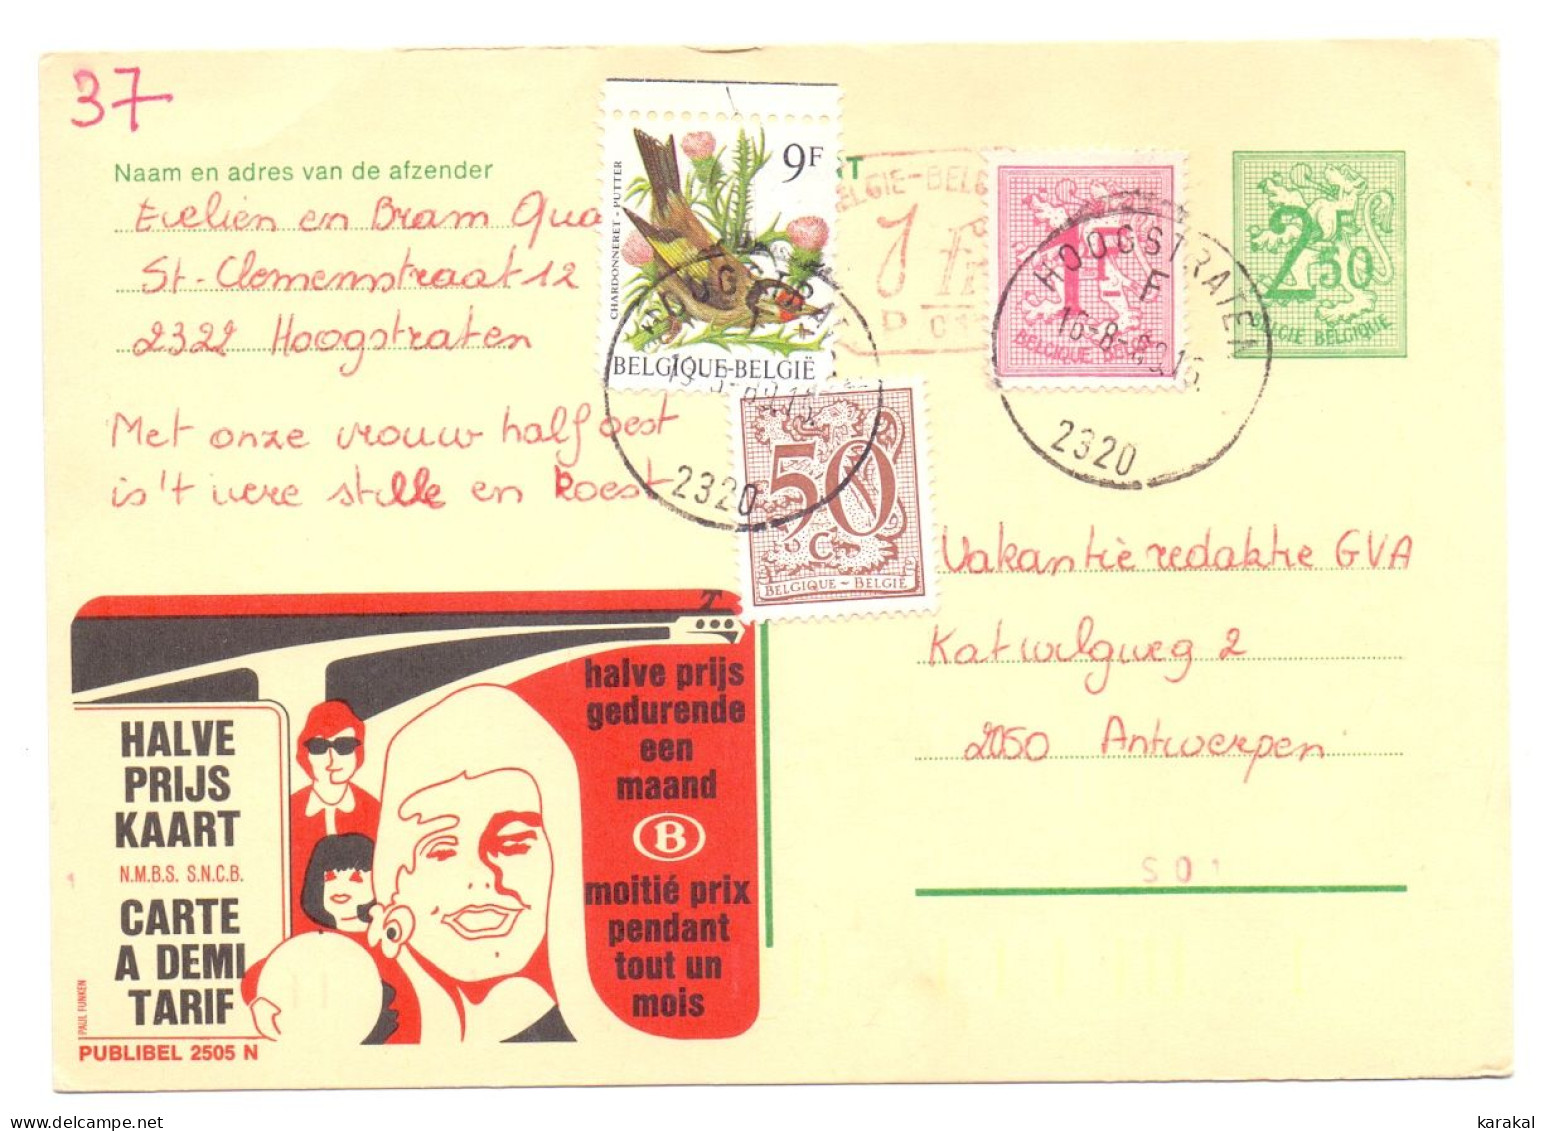 Belgique Entier Postal Stationery Publibel 2505 N P010 SNCB NMBS Halve Prijs Kaart Hoogstraten 1989 - Adreswijziging